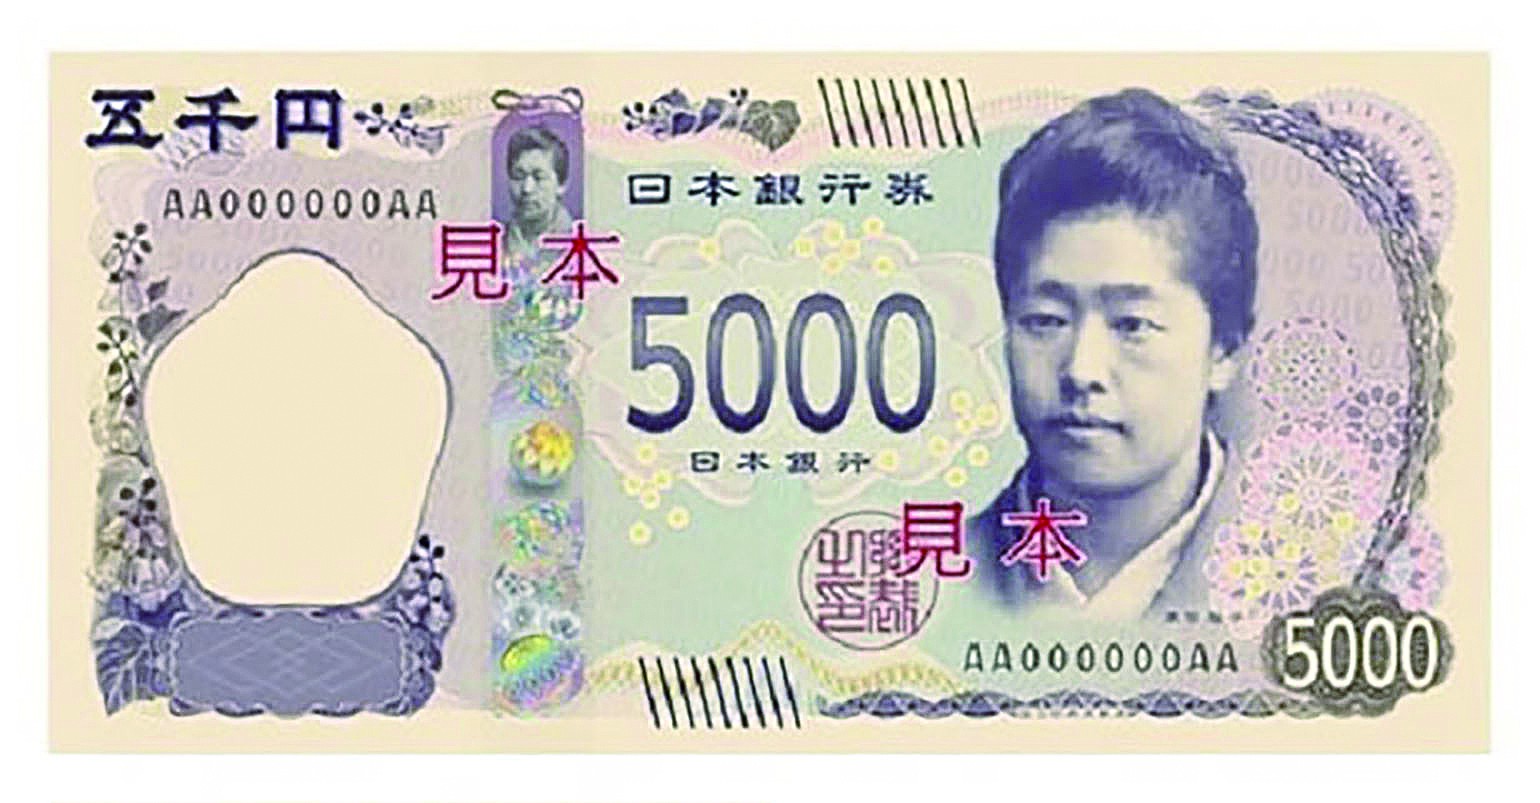 日元上的人物图片